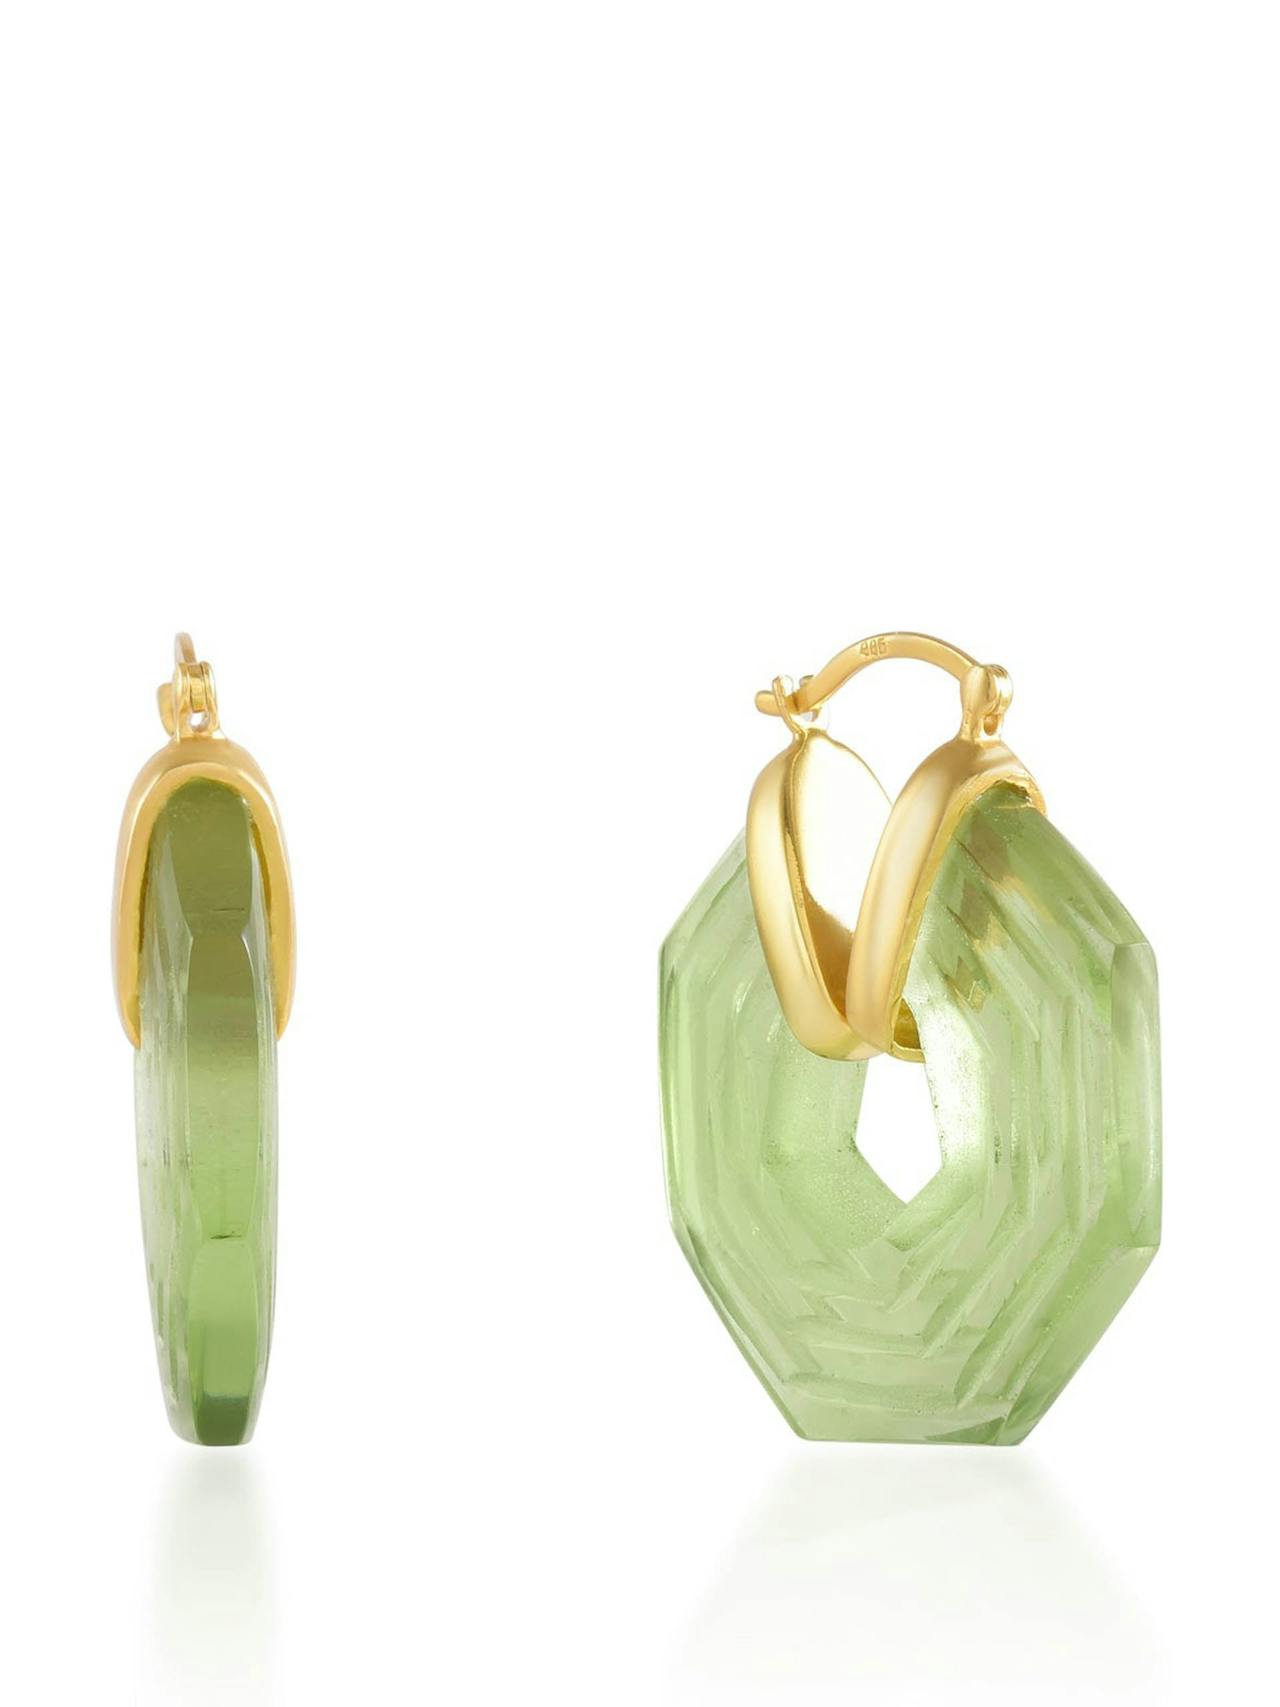 Soft green Sphinx earrings